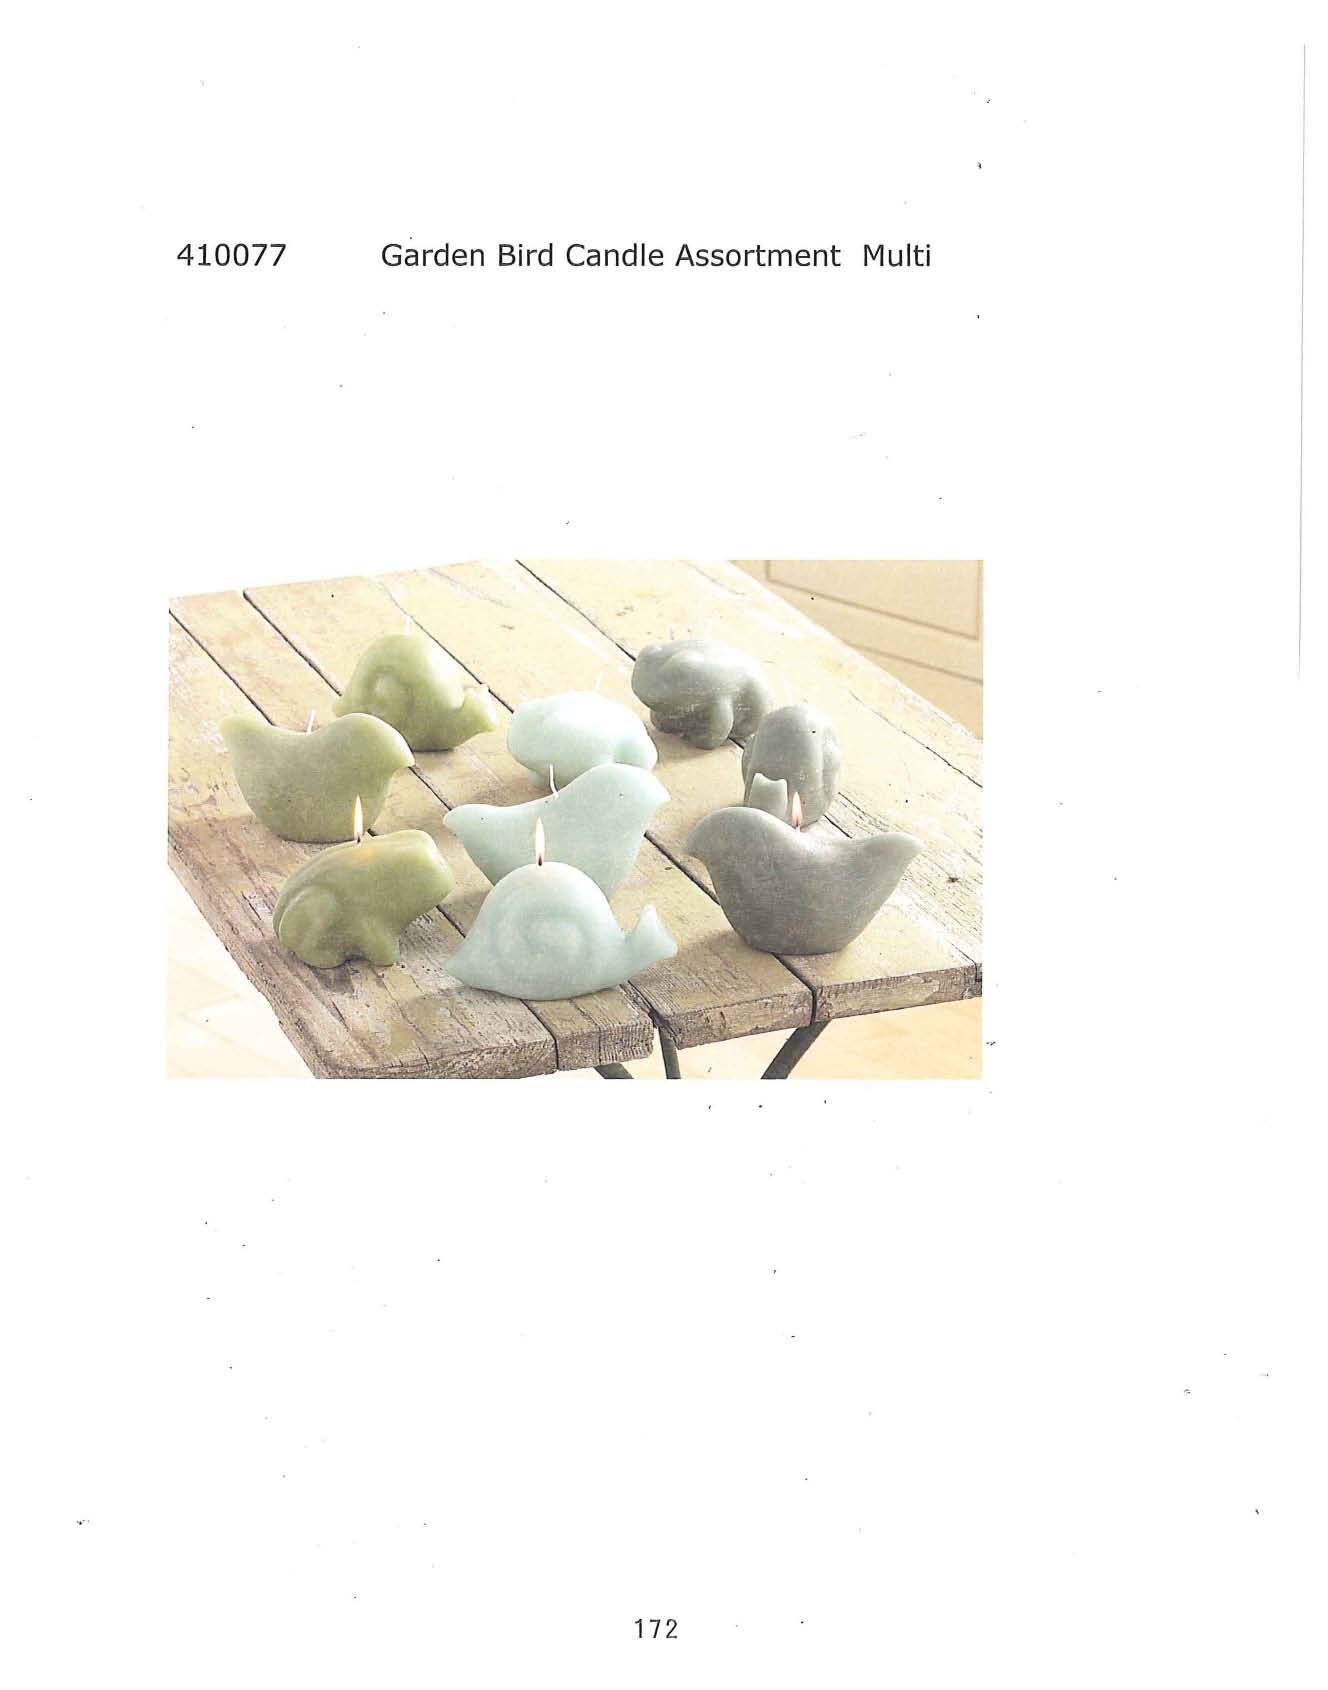 Garden Bird Candle Assortment - Multi